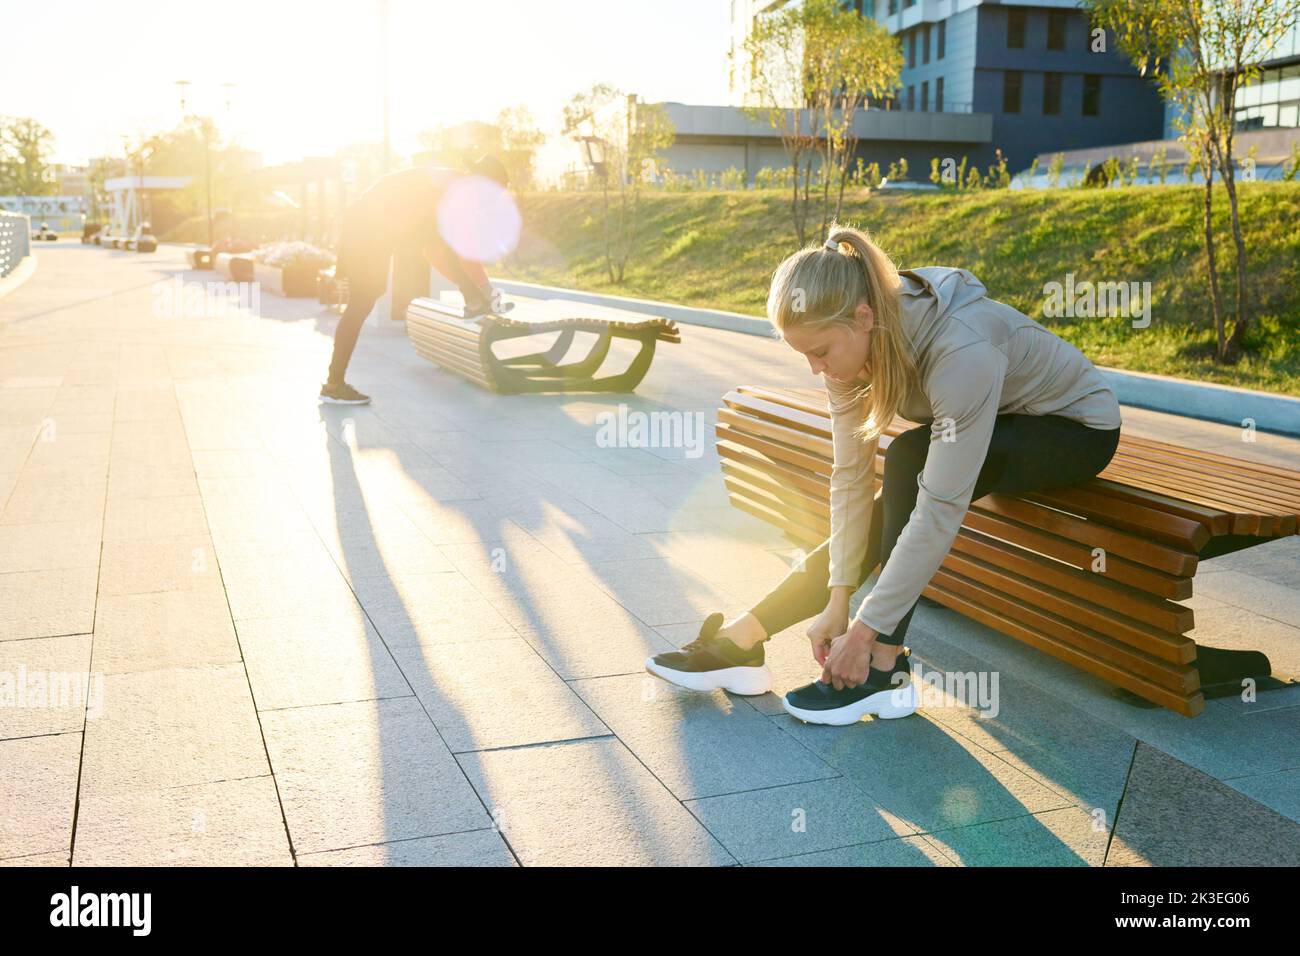 Joven deportista rubia en ropa activa sentada en la banca en un entorno urbano y doblándose sobre las sneakers mientras ataba el zapato Foto de stock